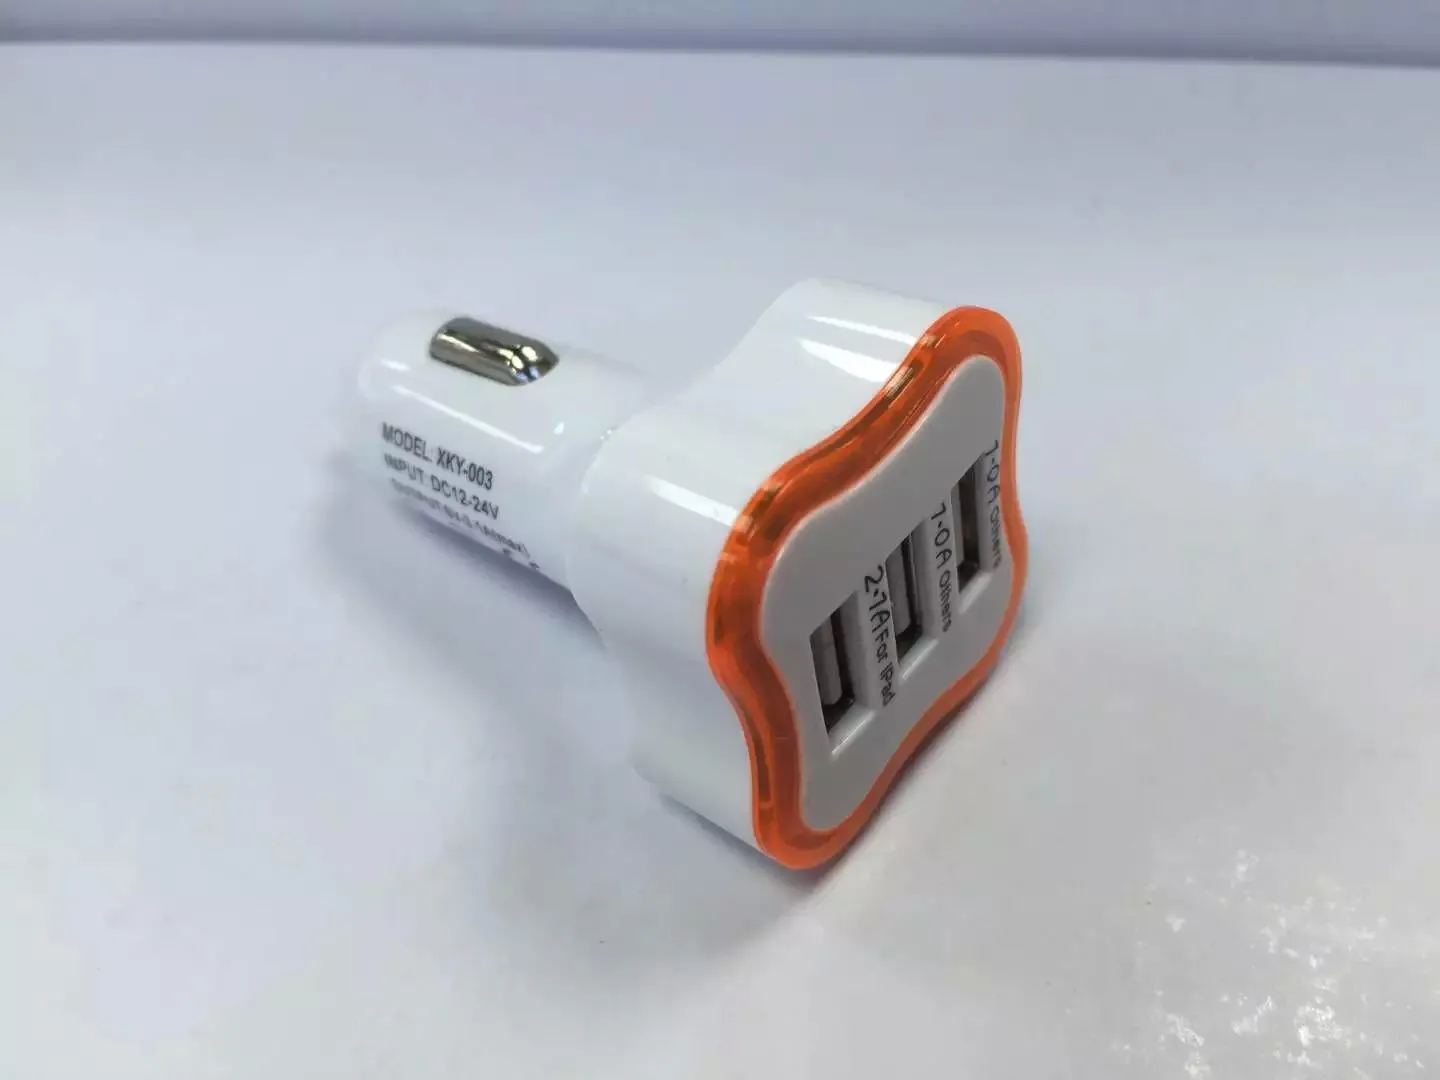 الصمام الخفيفة زهر البرقوق 2 USB 1.A 3 USB 2.6A شاحن سيارة محول الطاقة المحمولة / اثنين من الأنواع